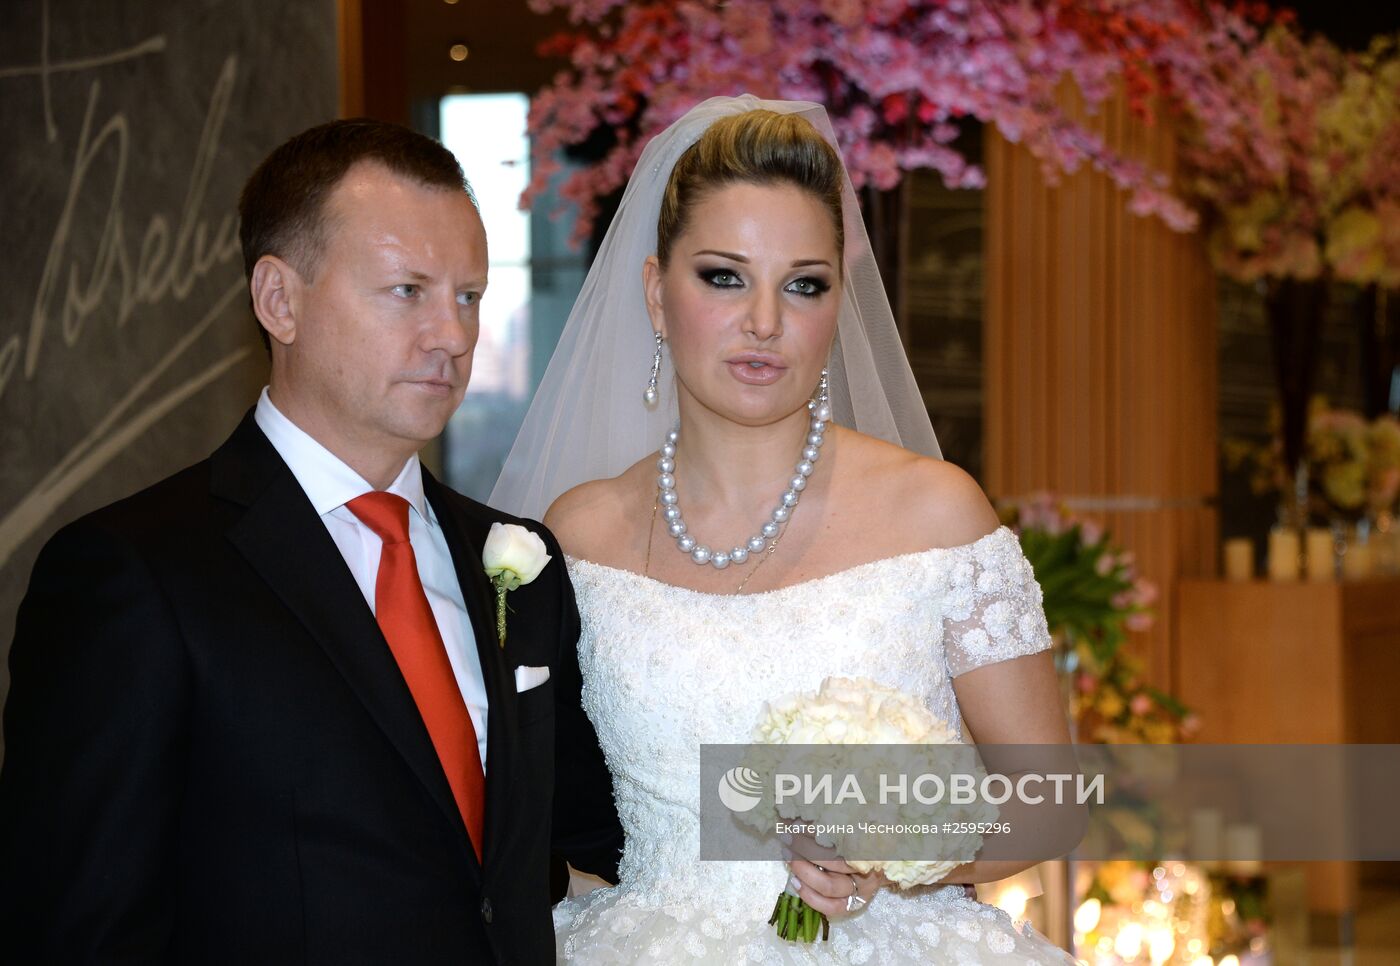 Свадьба оперной певицы Марии Максаковой